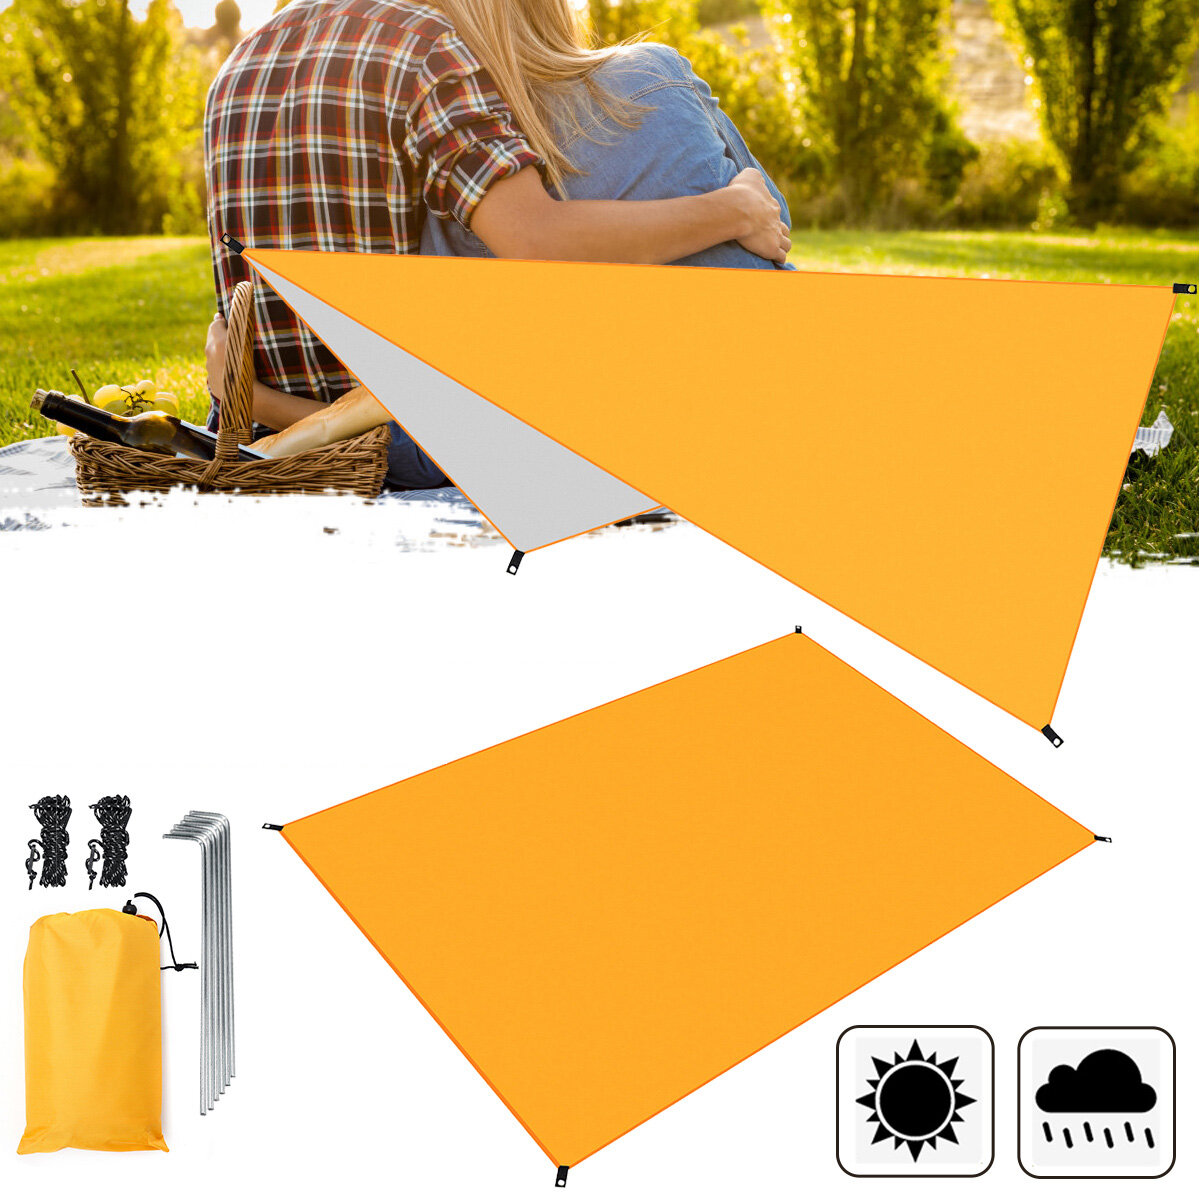 Разворачивающийся навес для палатки из оранжевого влагостойкого материала 210D Oxford, предназначенный для защиты от дождя и солнца, а также как коврик для пикника на открытом воздухе во время кемпинга и путешествий.